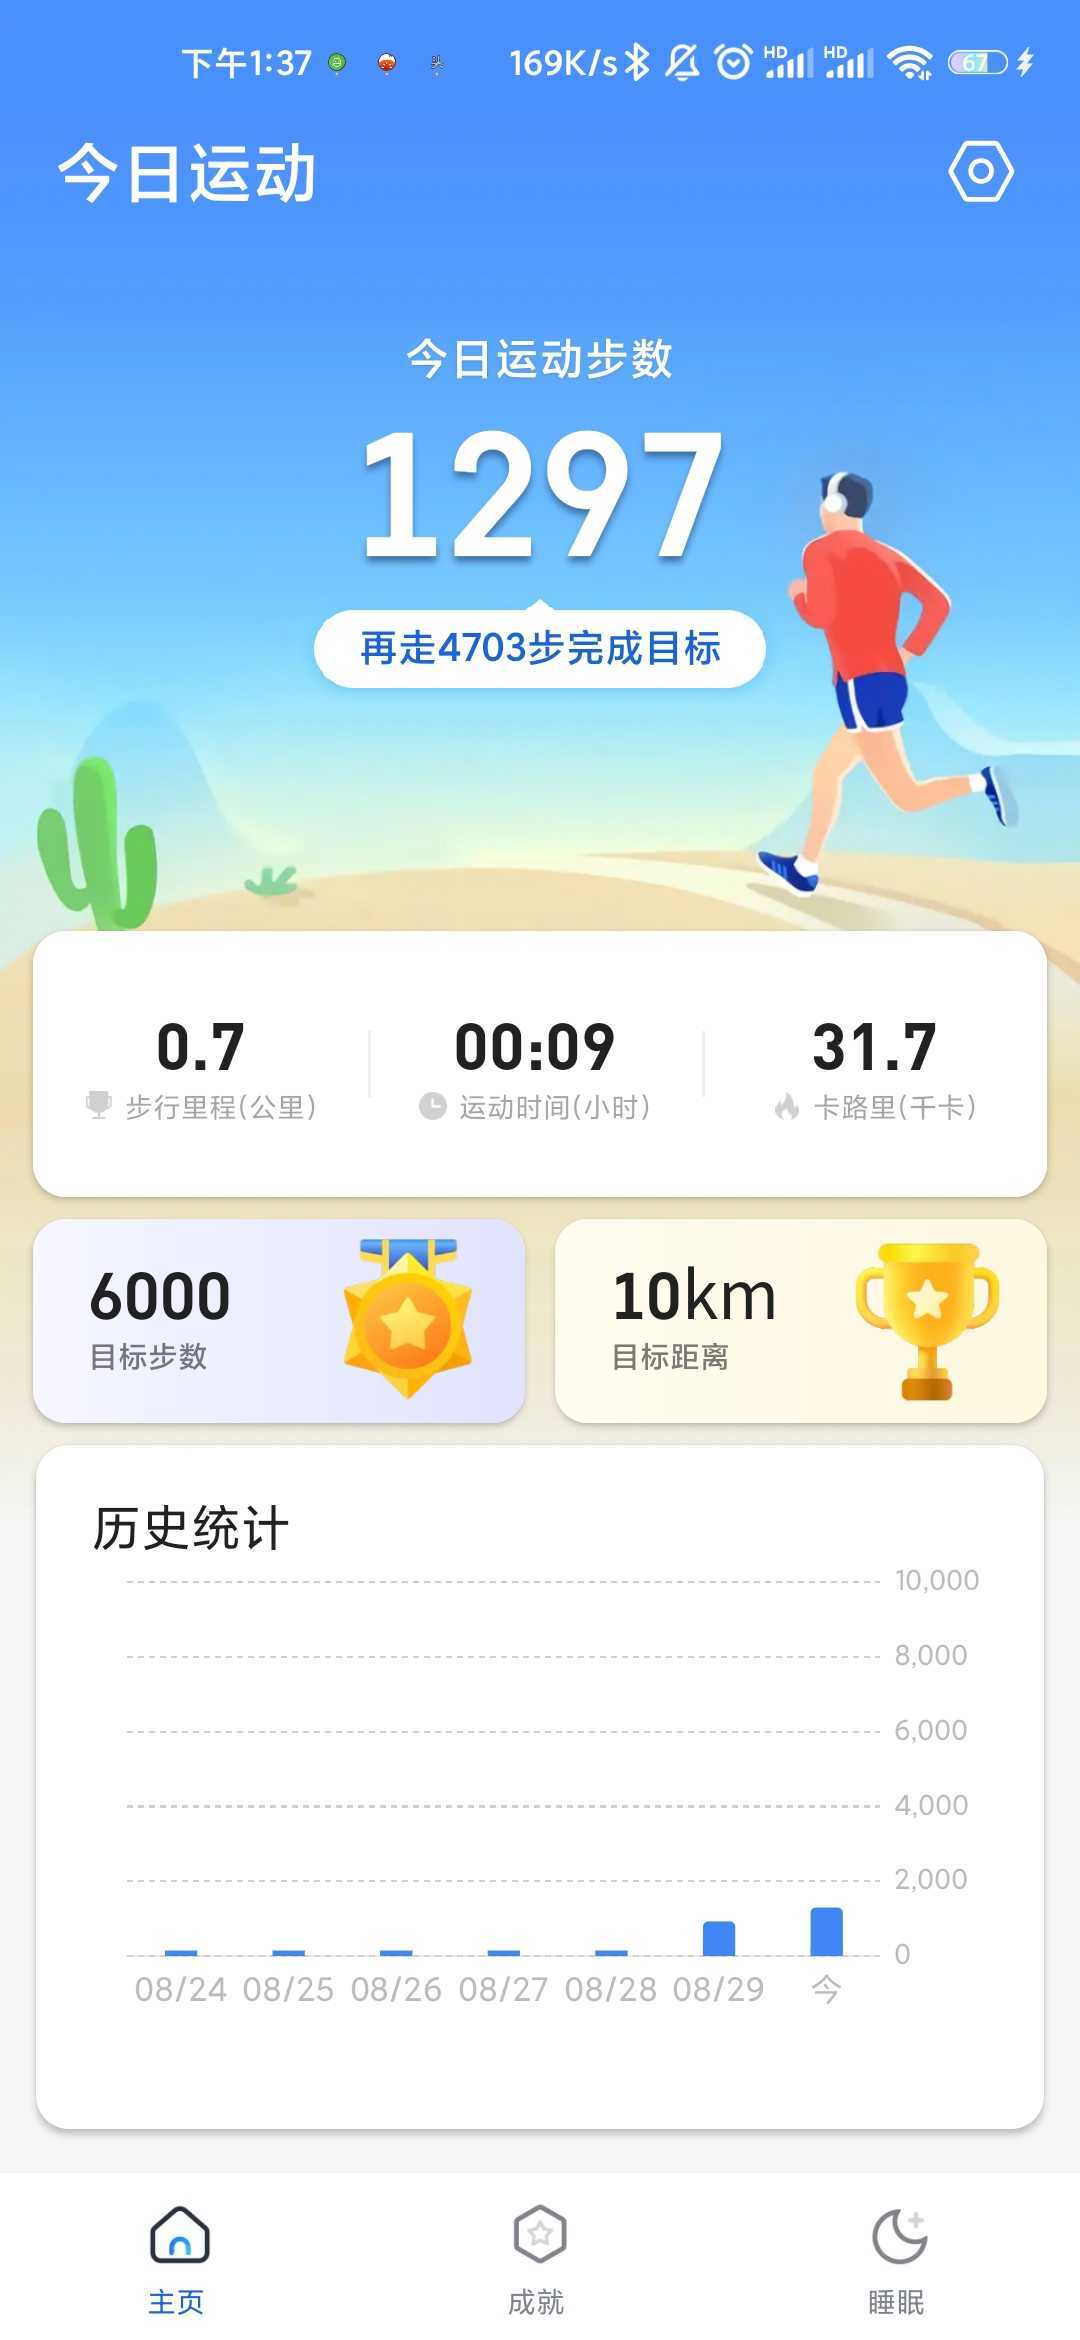 老王爱走路赚钱九江自助app开发平台